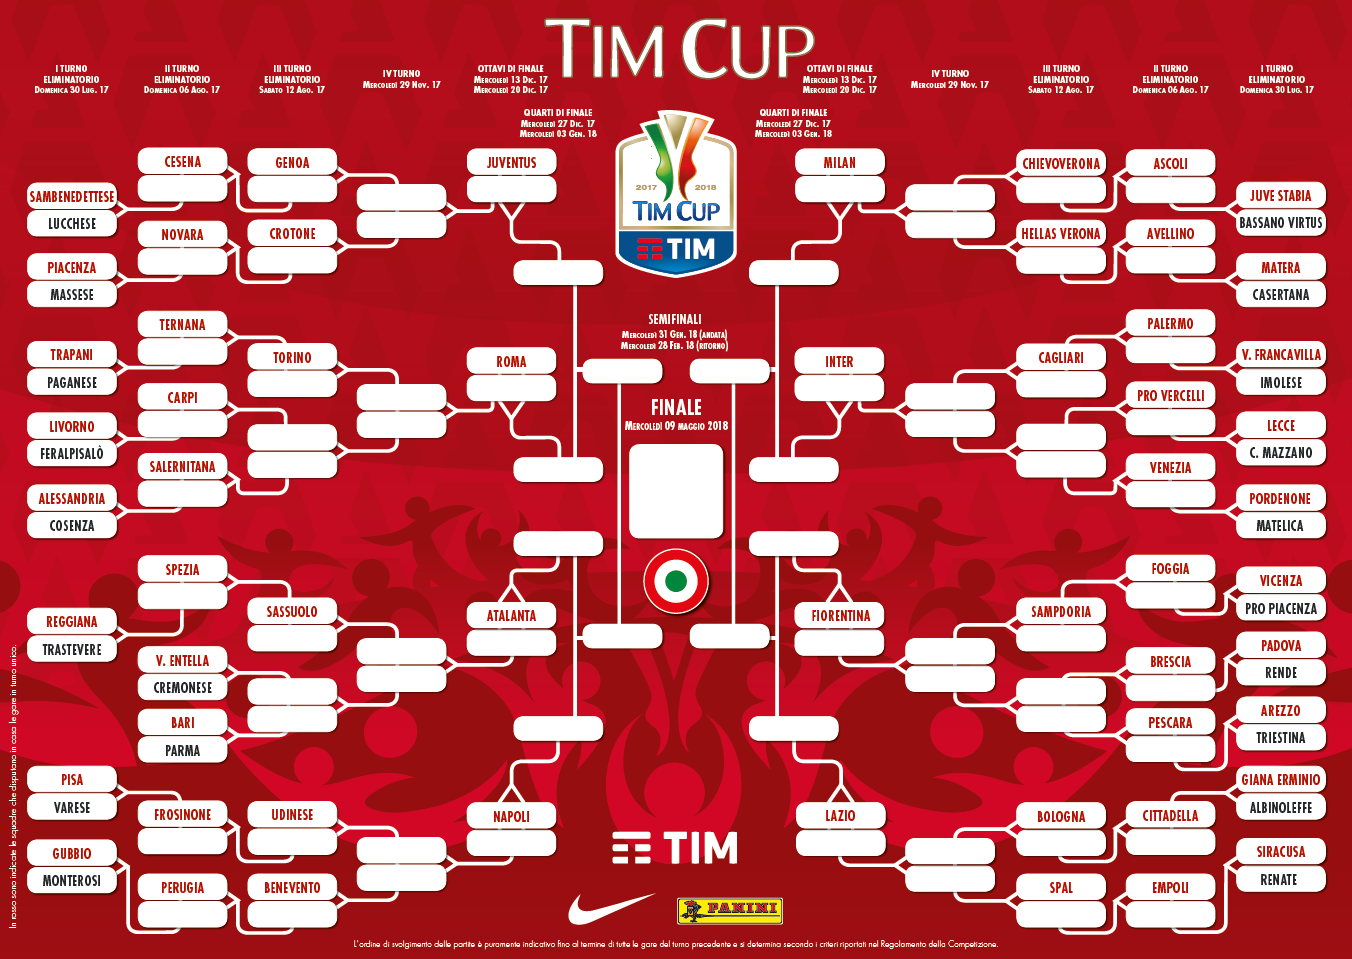 tabellone Coppa Italia 17-18 terzo turno